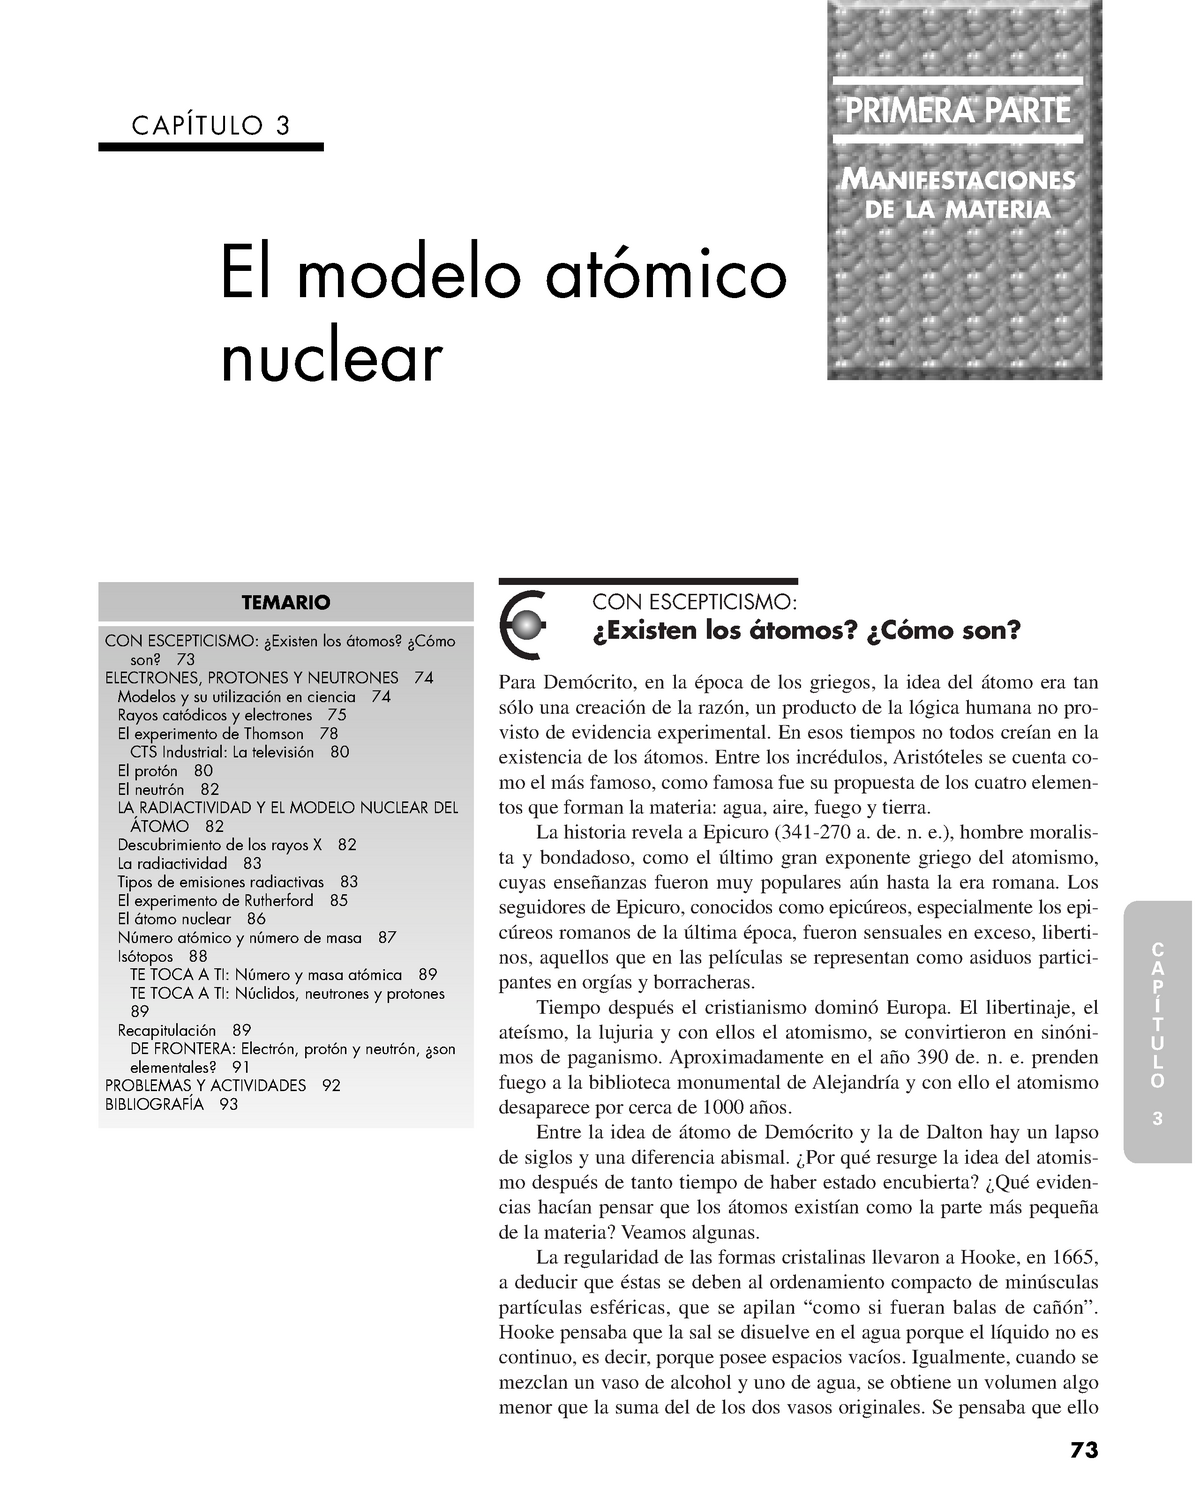 Modelos atómicos nucleares - CON ESCEPTICISMO: ####### ¿Existen los átomos?  ¿Cómo son? Para - Studocu